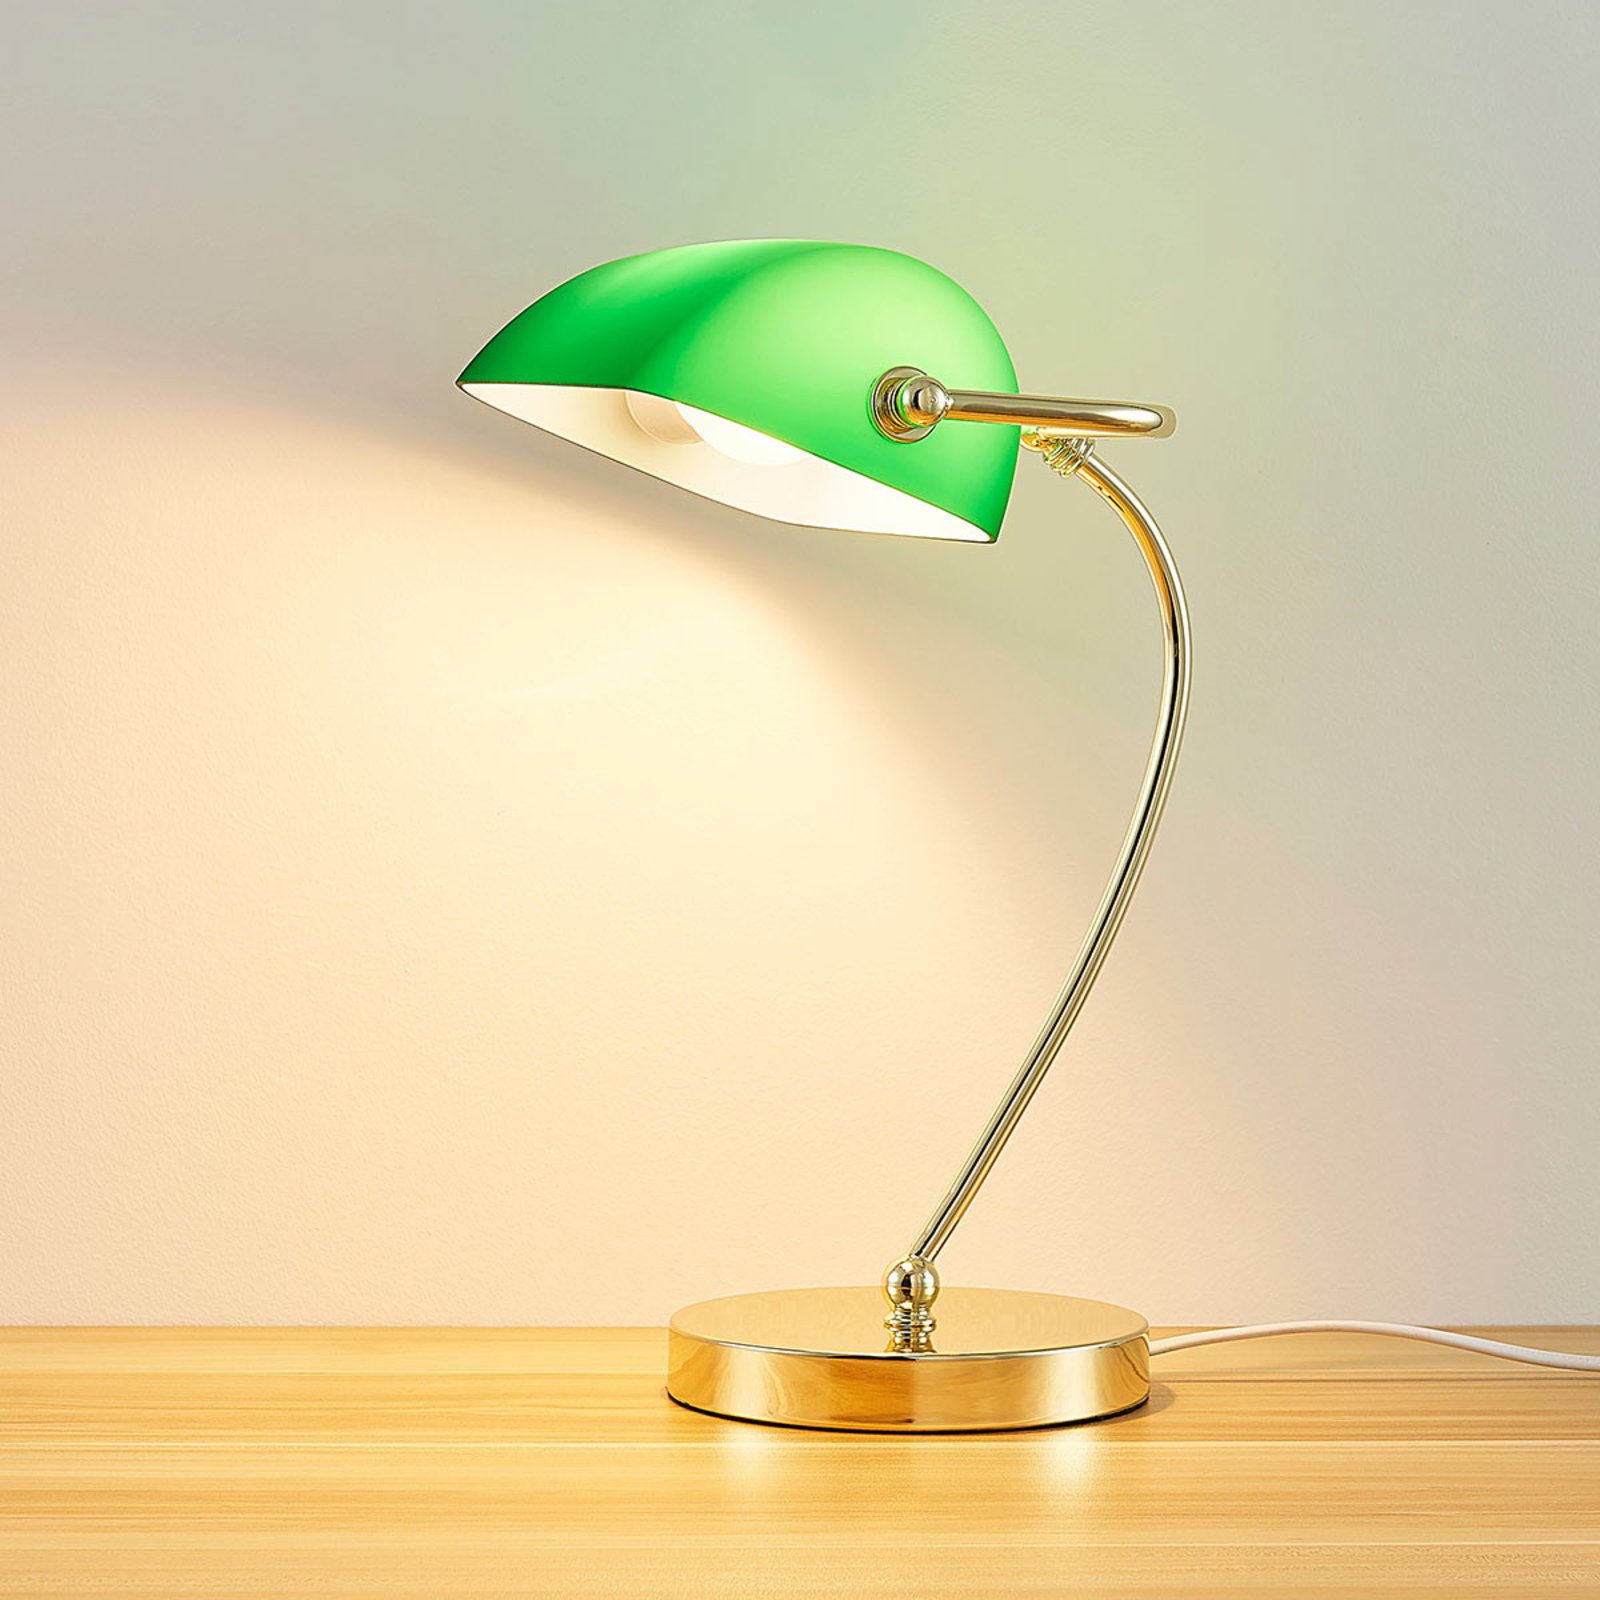 Selea sárgaréz asztali lámpa, zöld üvegbúra